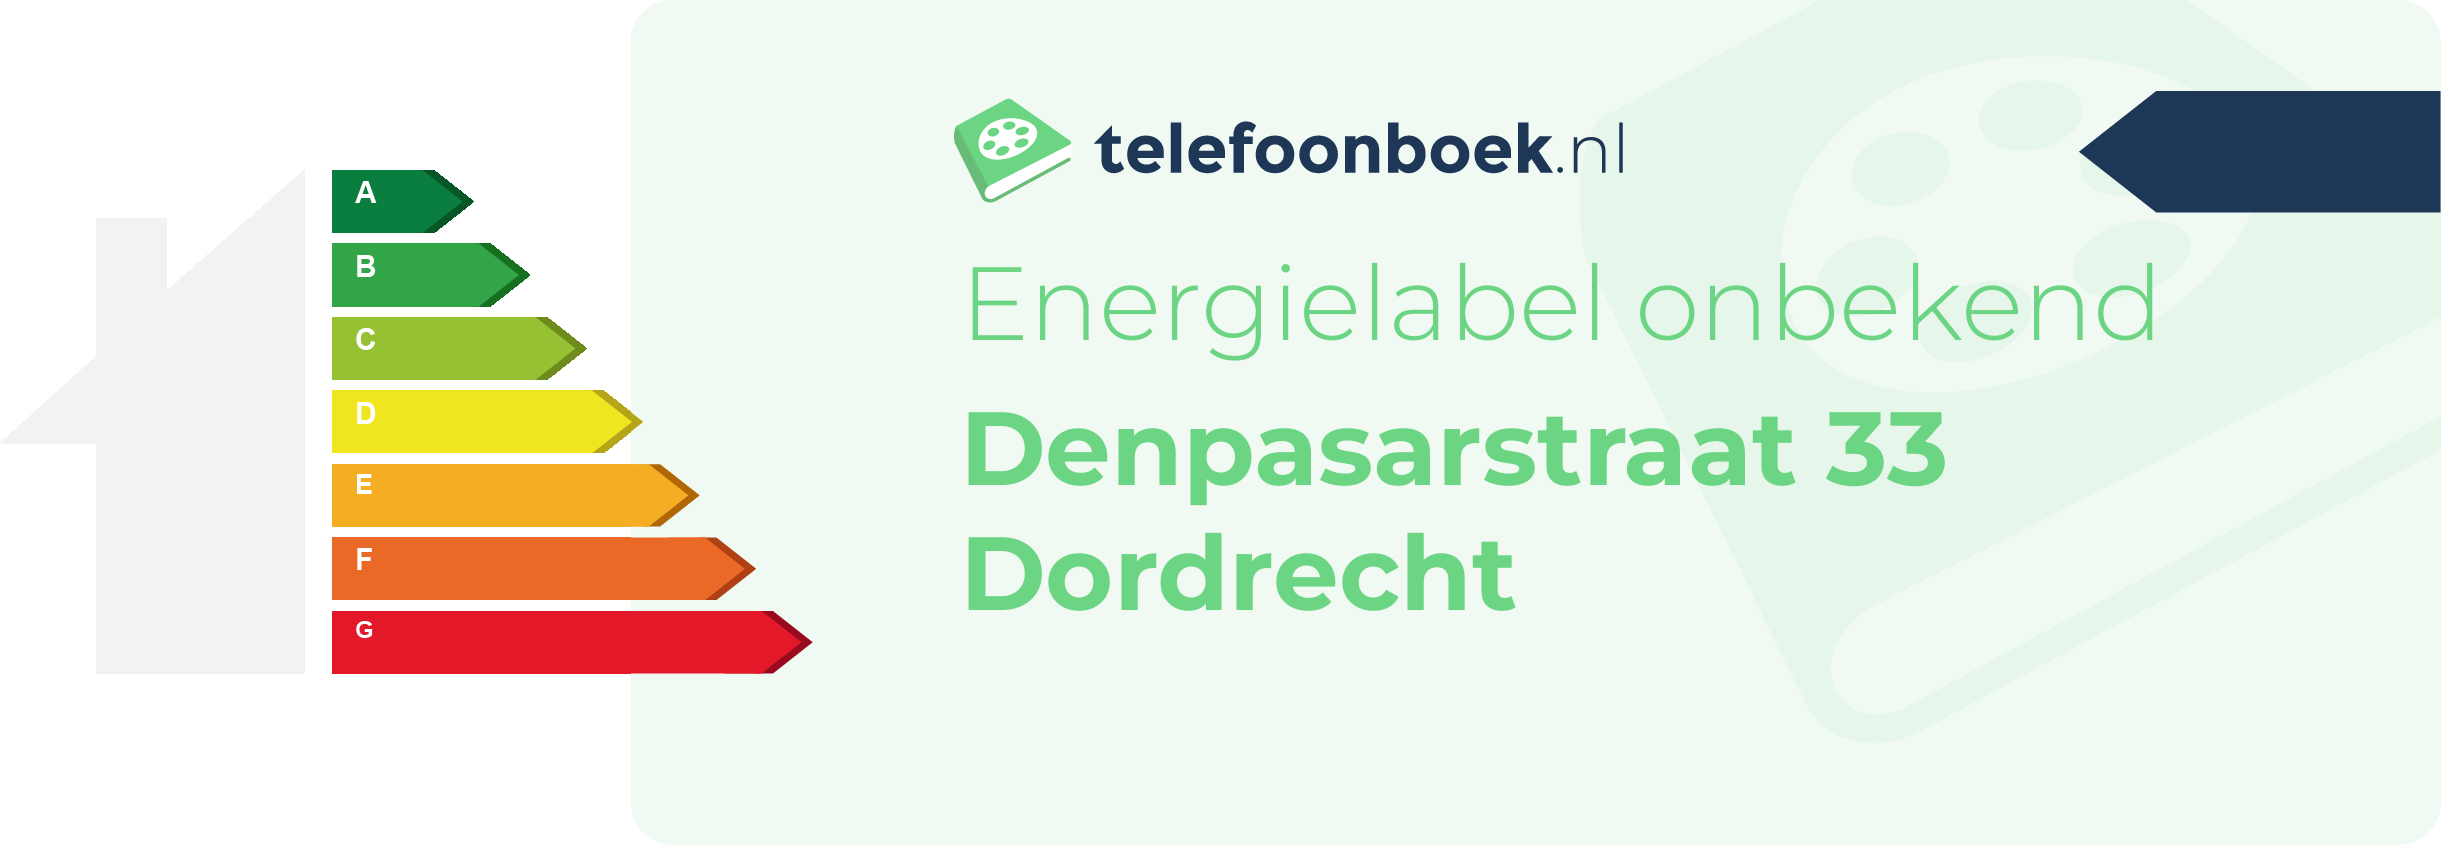 Energielabel Denpasarstraat 33 Dordrecht